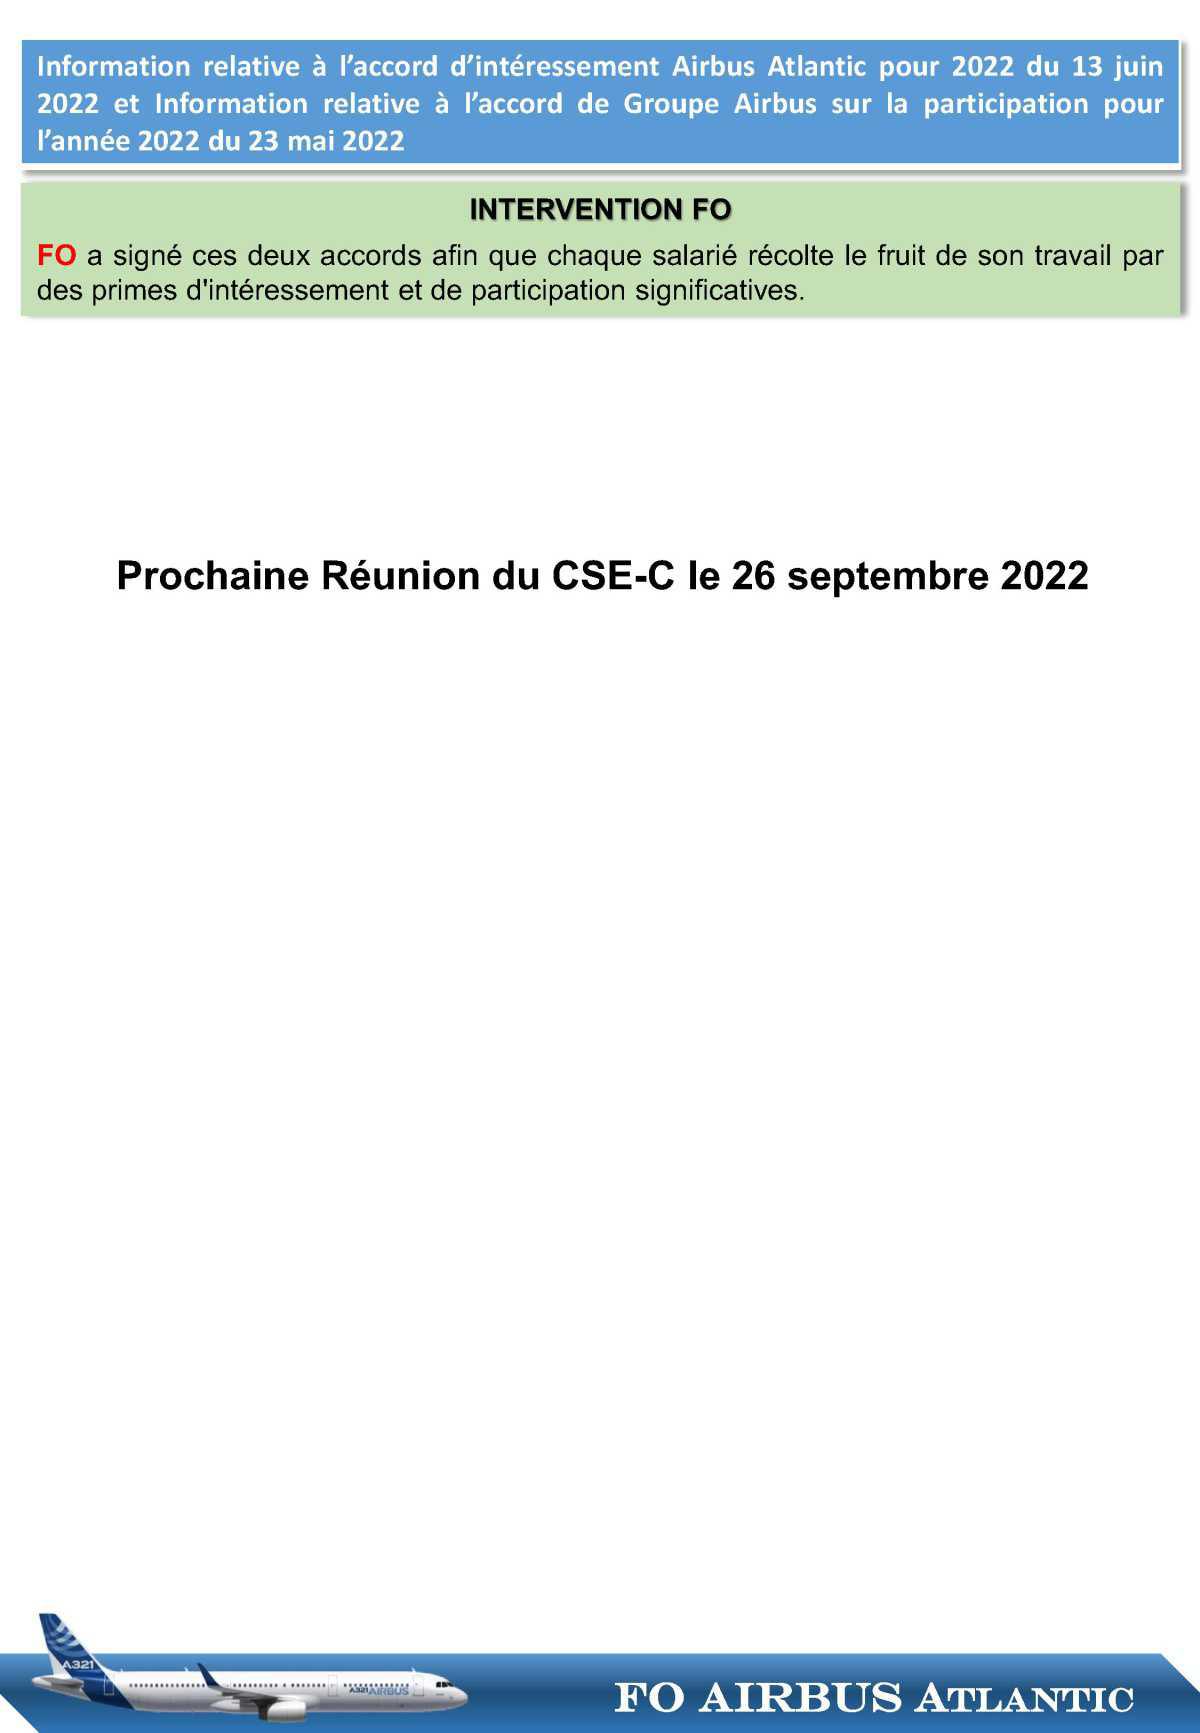 Compte rendu succinct du CSE-C du 24 juin 2022